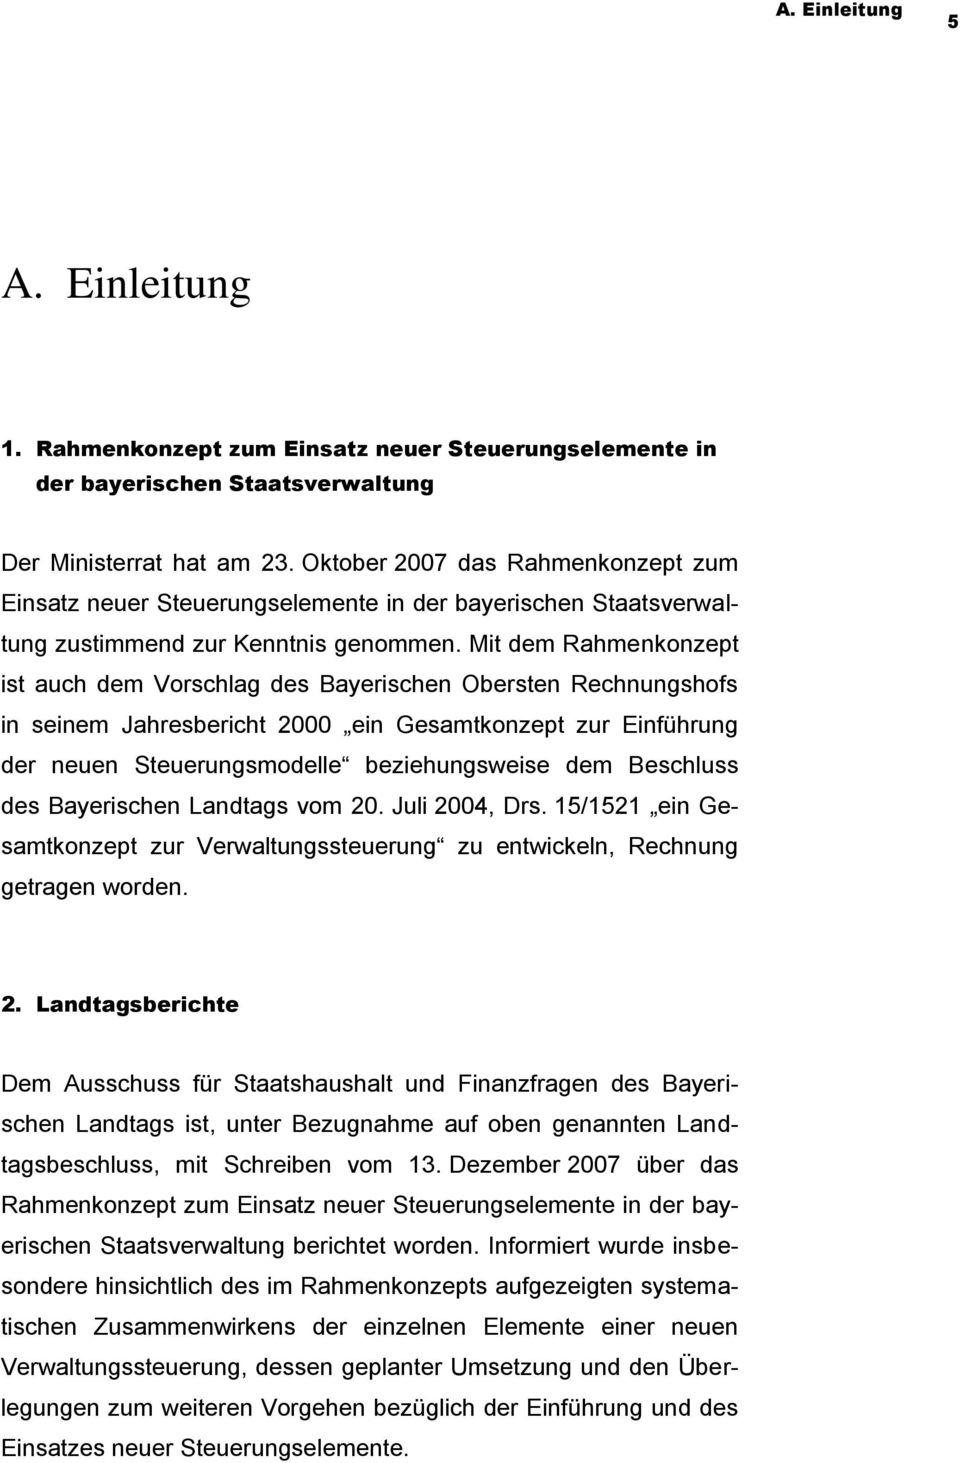 Mit dem Rahmenkonzept ist auch dem Vorschlag des Bayerischen Obersten Rechnungshofs in seinem Jahresbericht 2000 ein Gesamtkonzept zur Einführung der neuen Steuerungsmodelle beziehungsweise dem